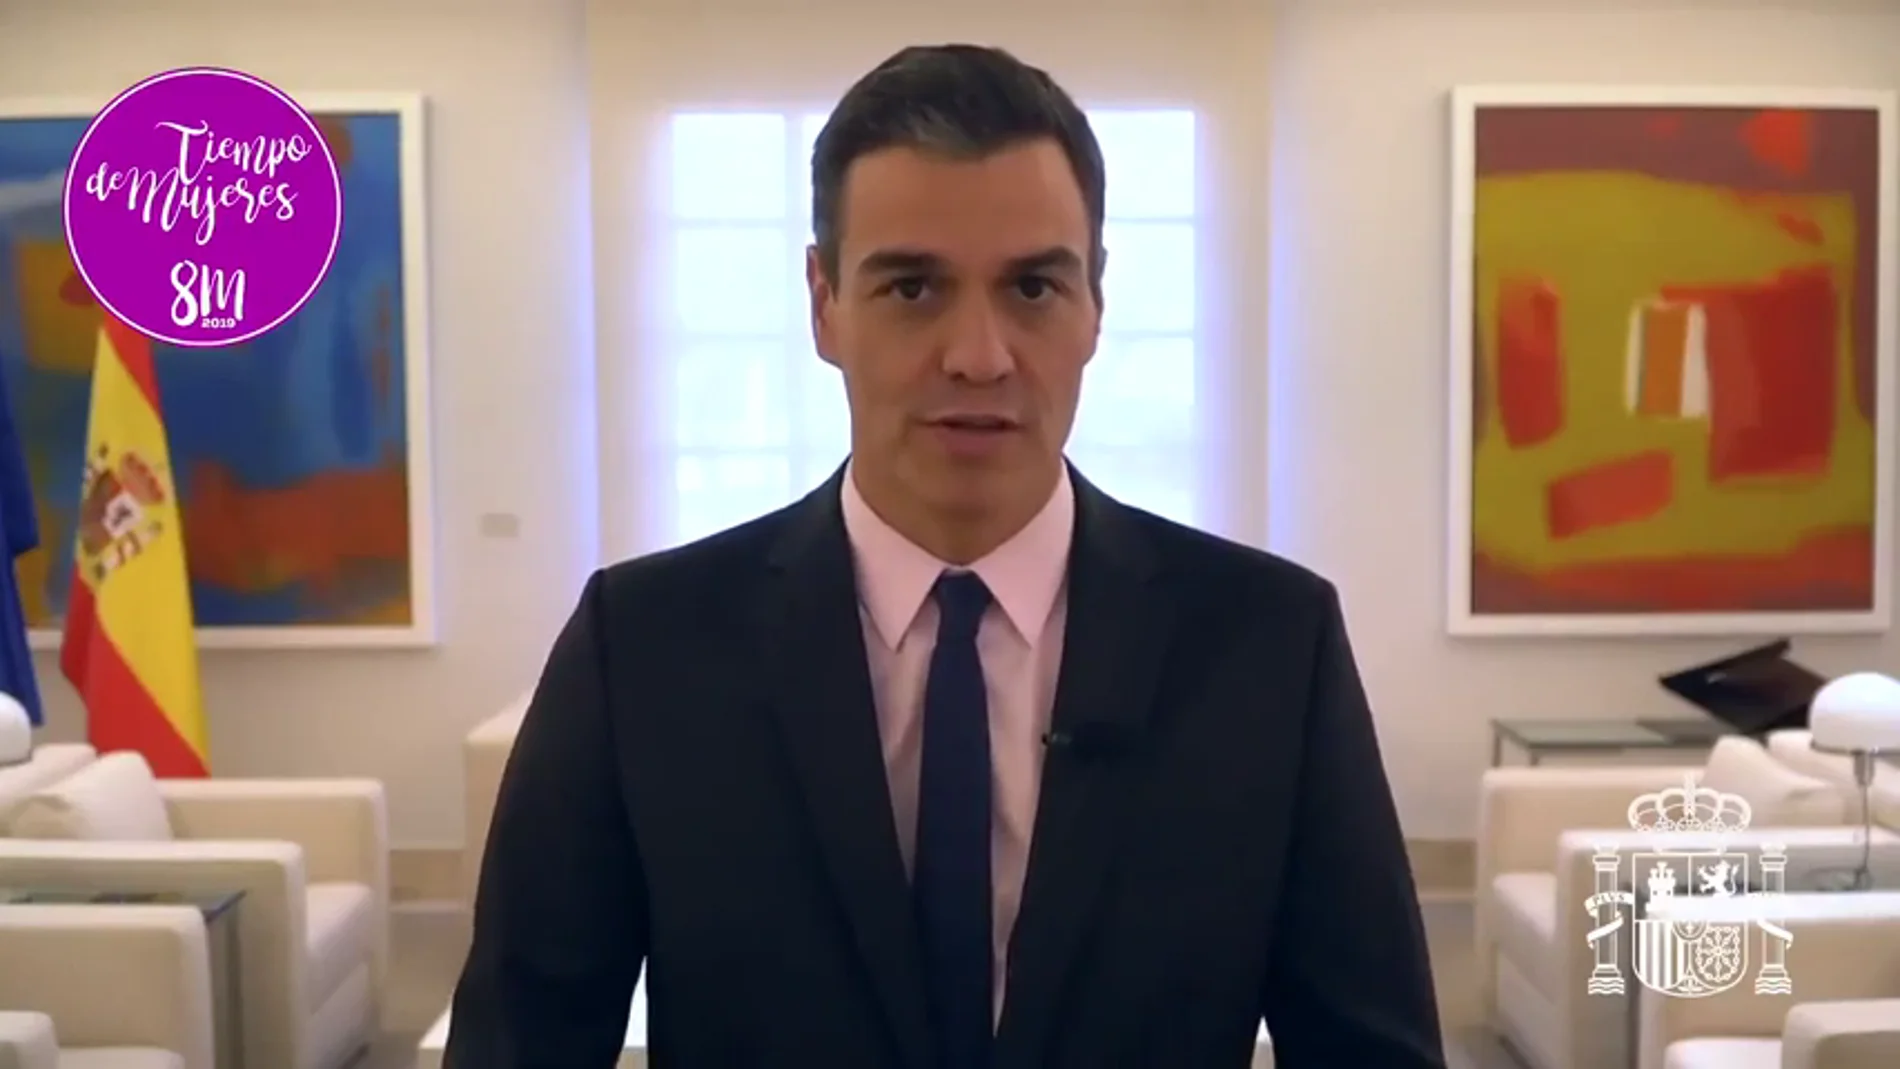 El Gobierno de Pedro Sánchez plasma en un vídeo su compromiso con el feminismo: "Hoy más que nunca es tiempo de mujeres"